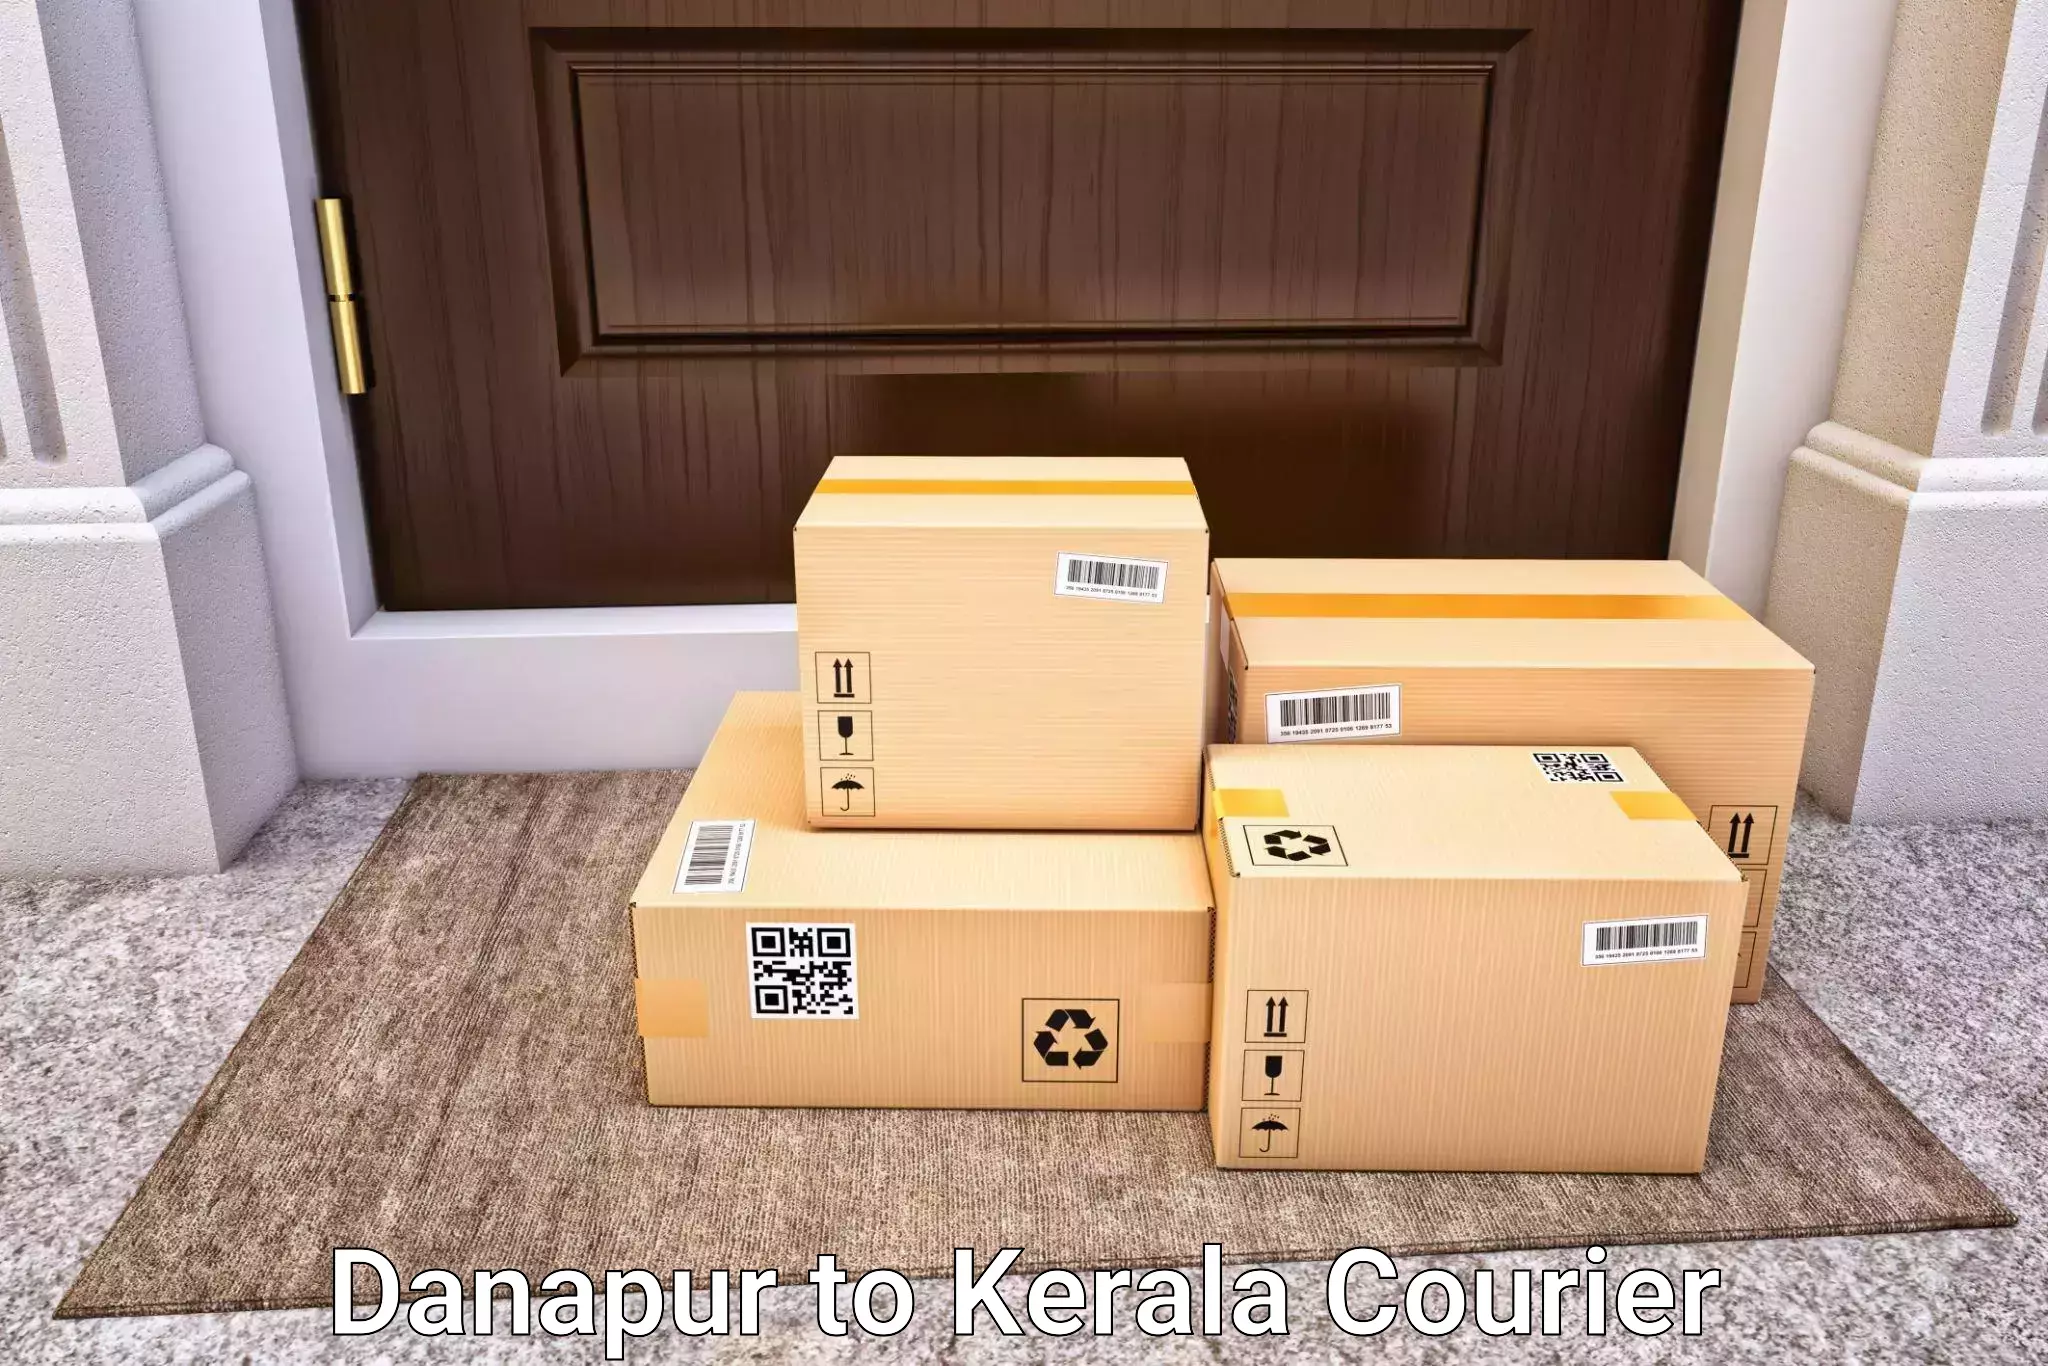 Luggage delivery calculator Danapur to Mundakayam